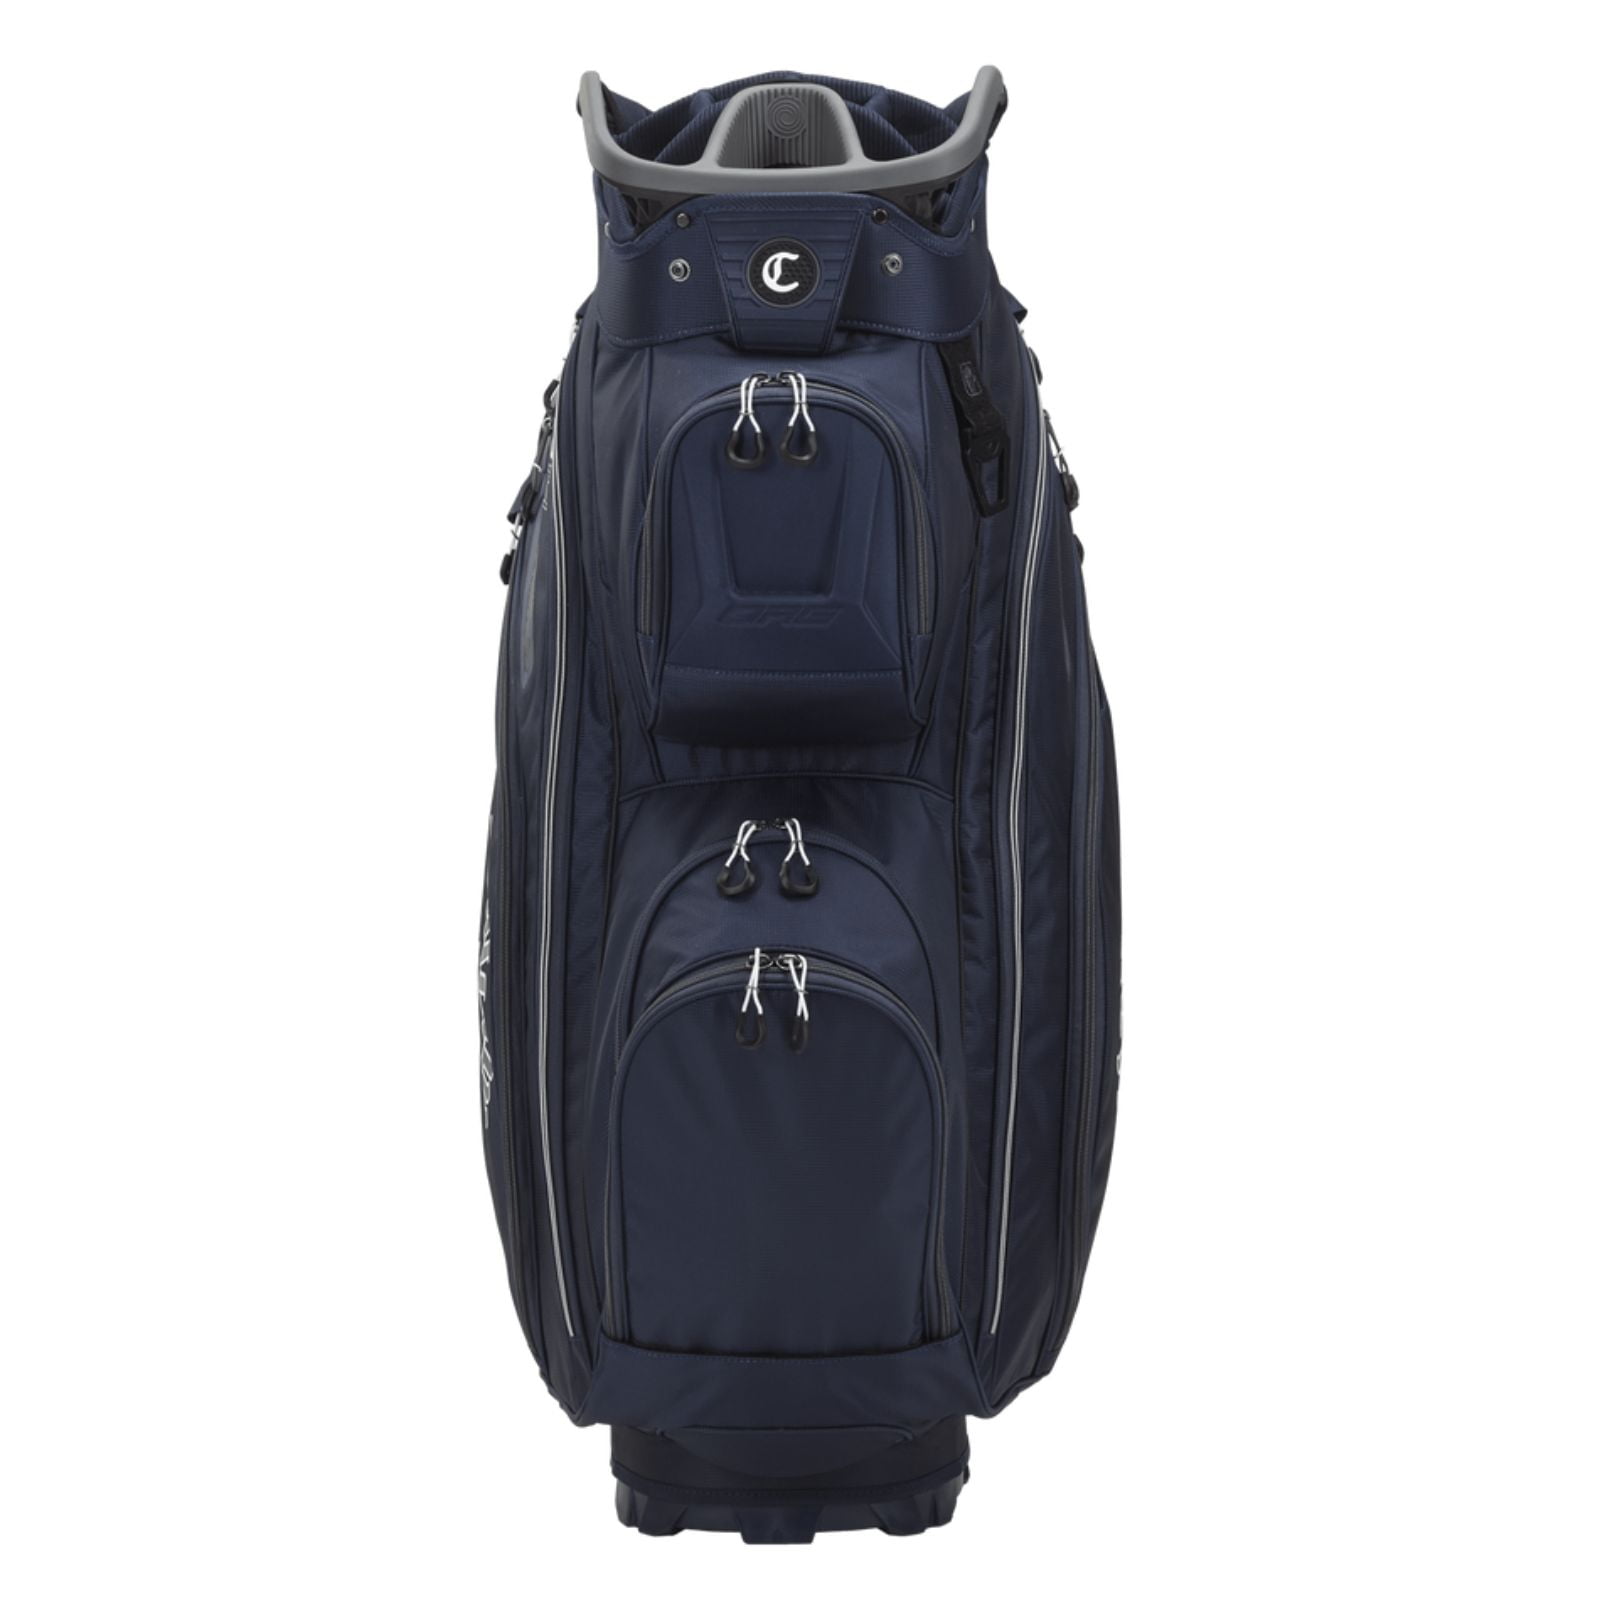 Callaway Golf ORG 14 Cart Bag Black Print Charcoal - Walmart.com